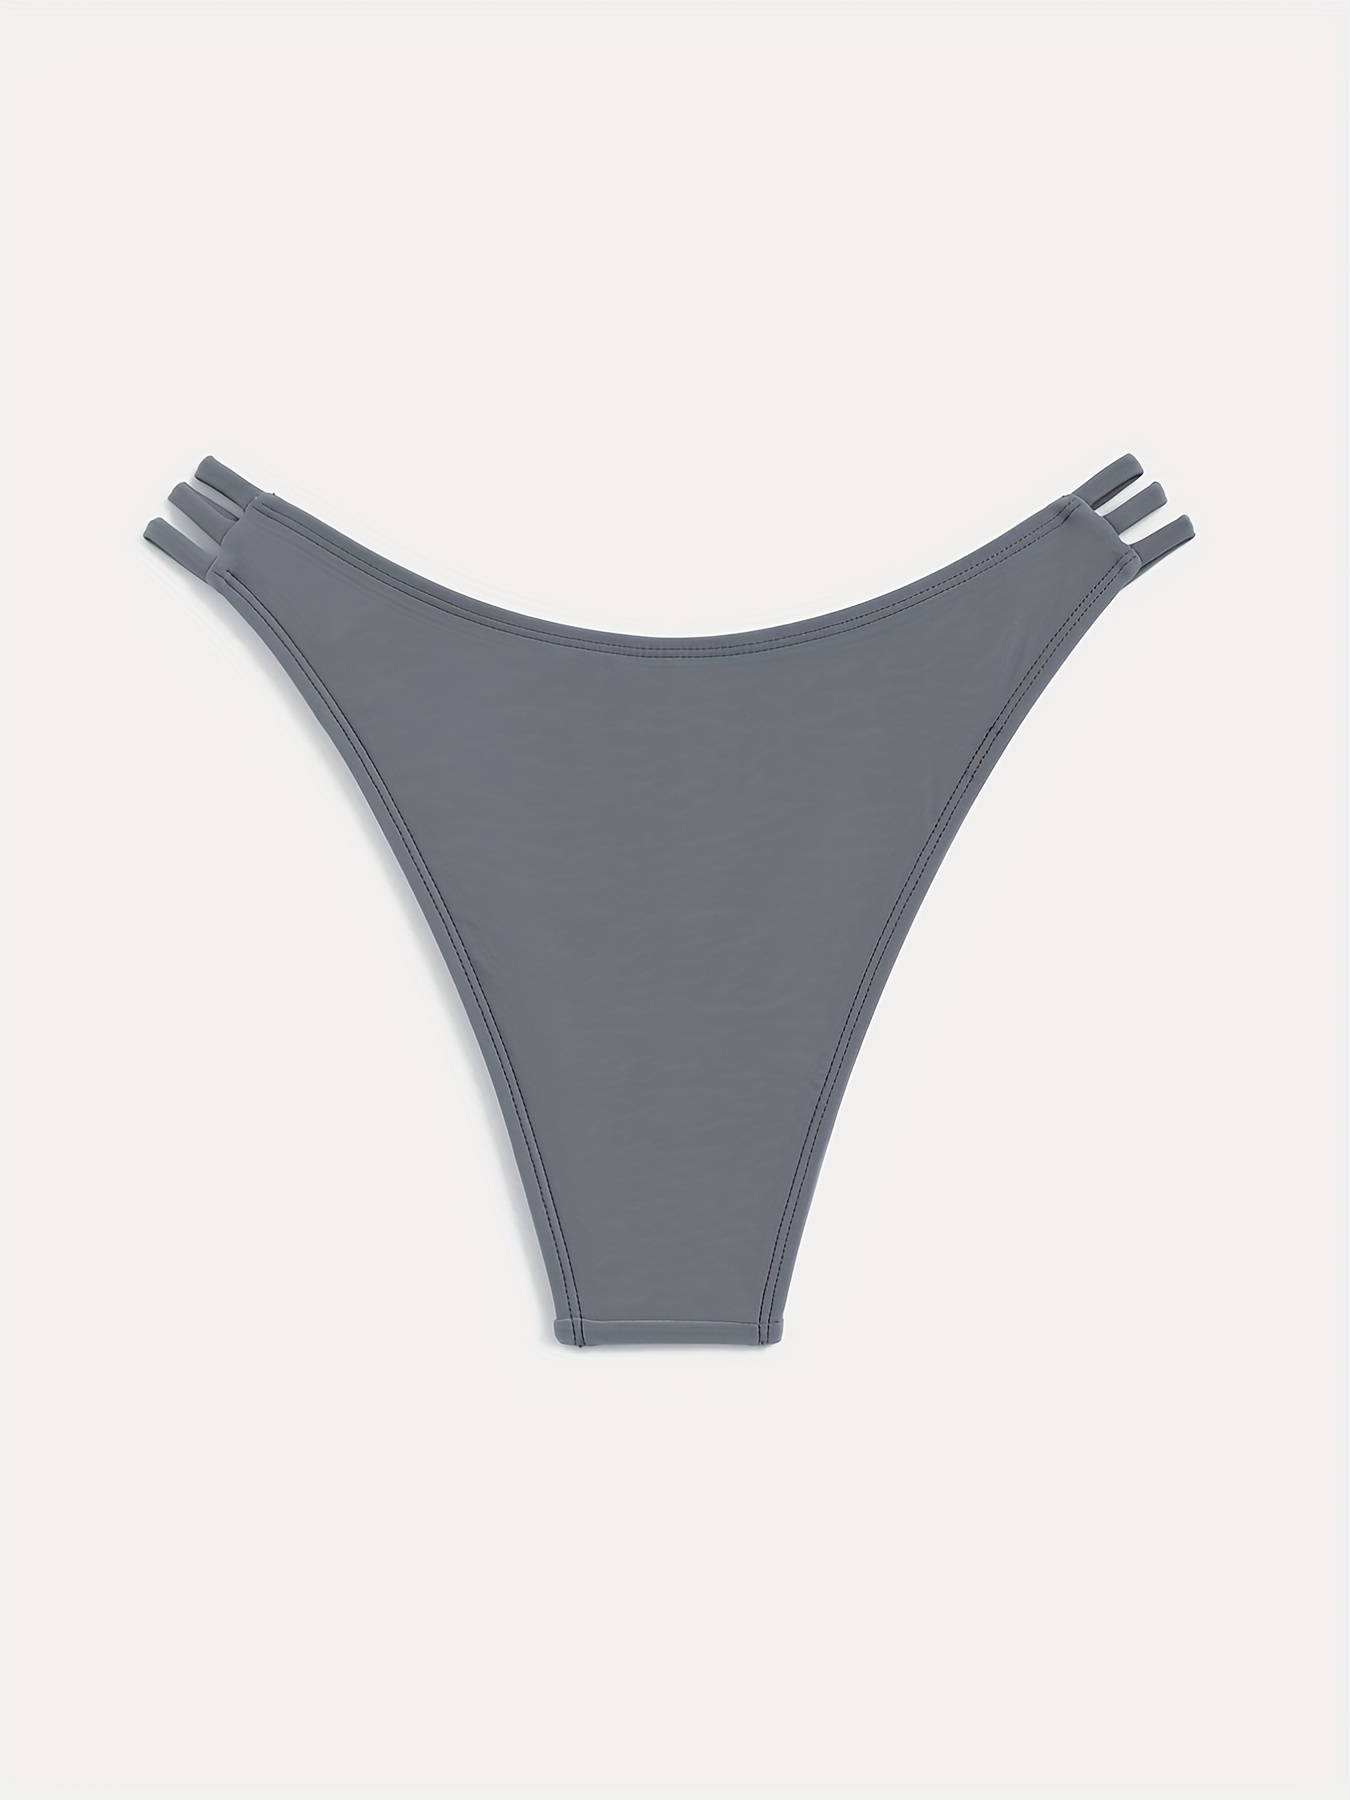 Grey Cut Out Bikini Bottom, Low Waist High-Stretch High Cut Beachwear  Bottom, Women's Swimwear & Clothing